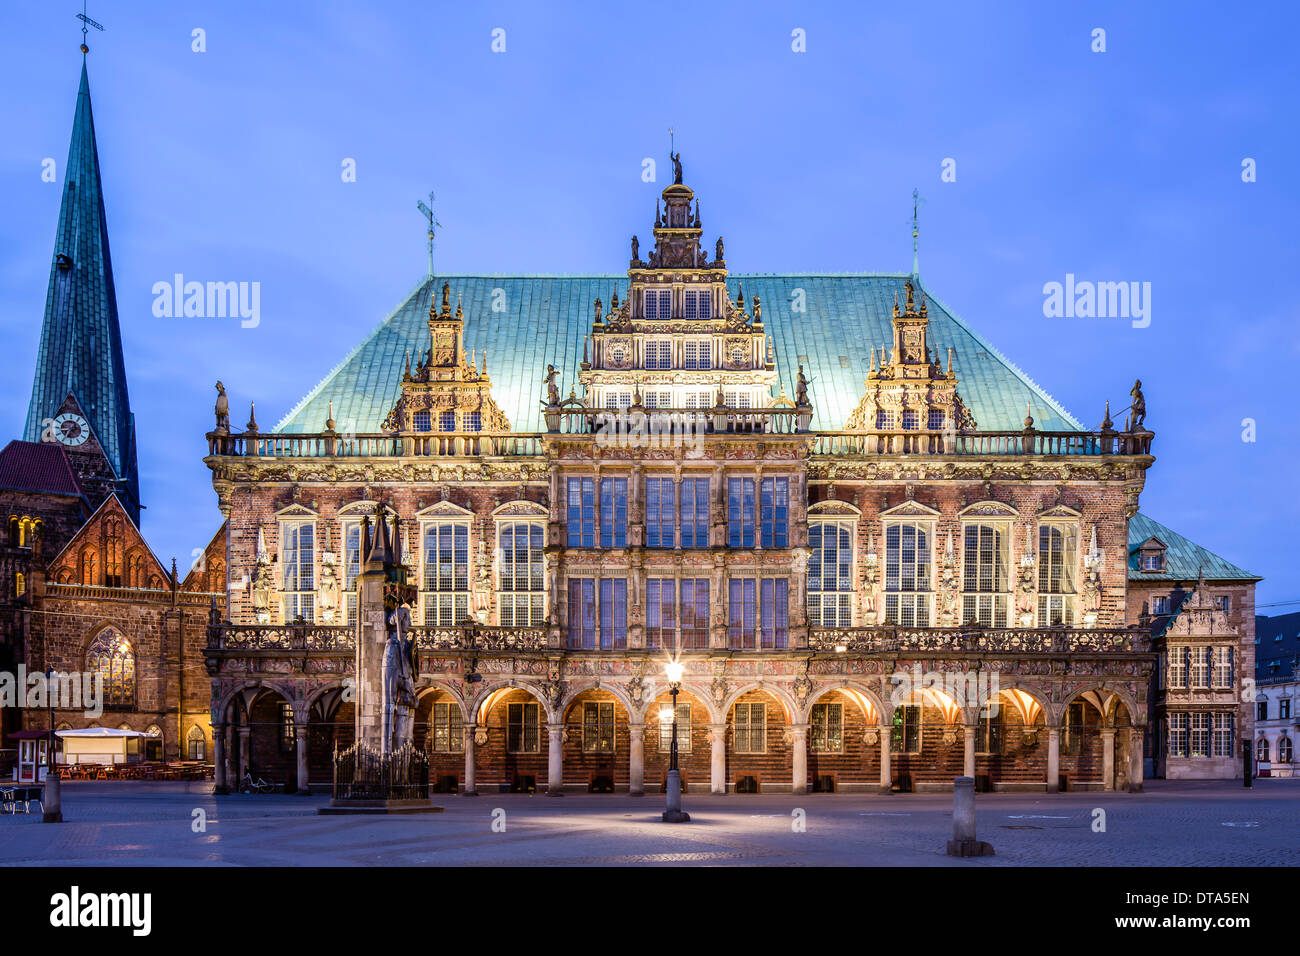 Hôtel de ville de Brême, Weser-renaissance, Site du patrimoine culturel mondial de l'UNESCO, l'église Notre Dame sur la gauche, Brême, Allemagne Banque D'Images